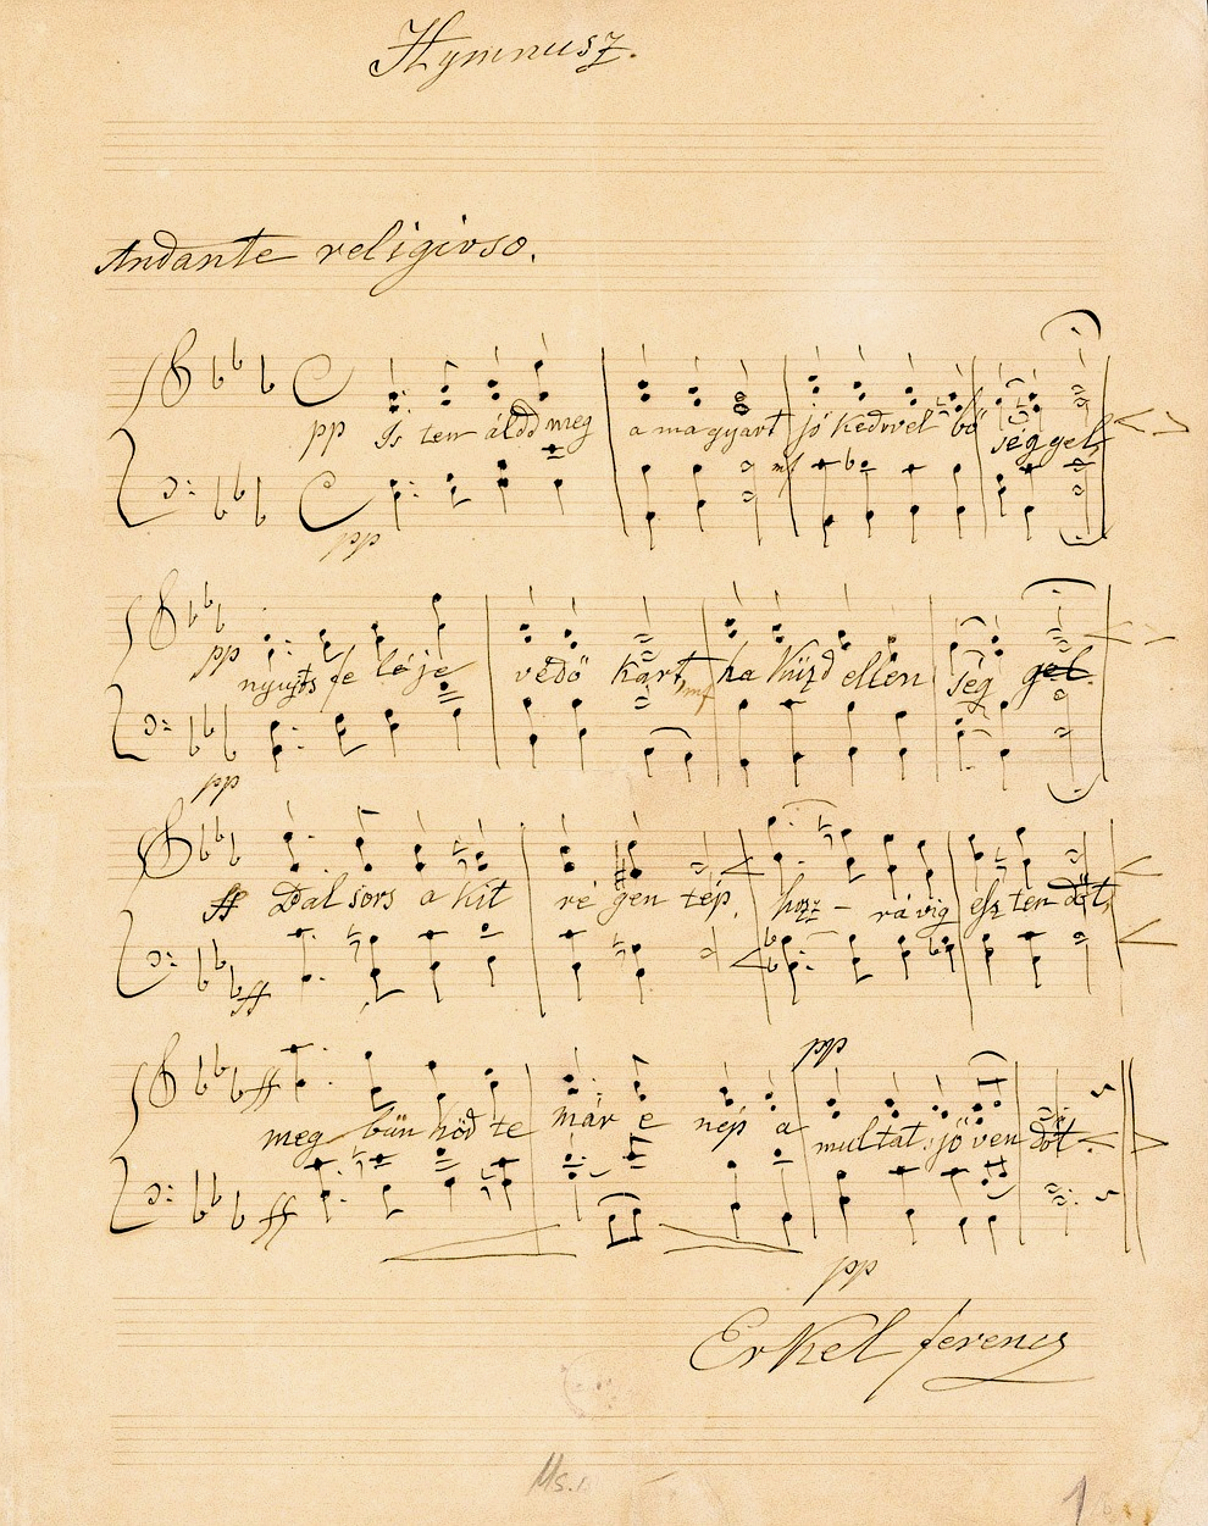 A Himnusz kottájának eredeti kézirata